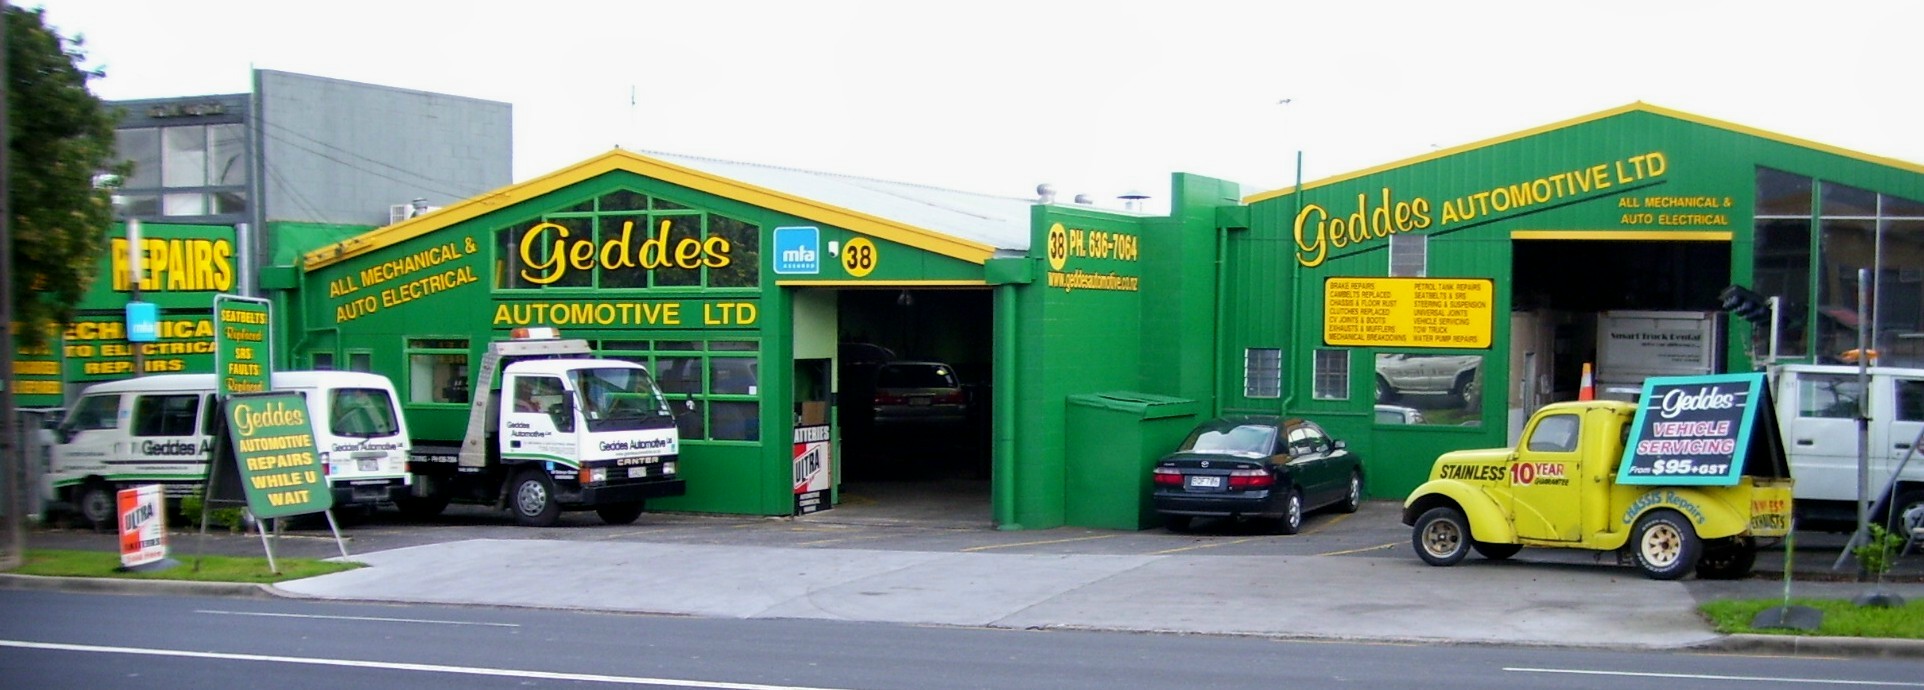 Geddes Automotive Garage